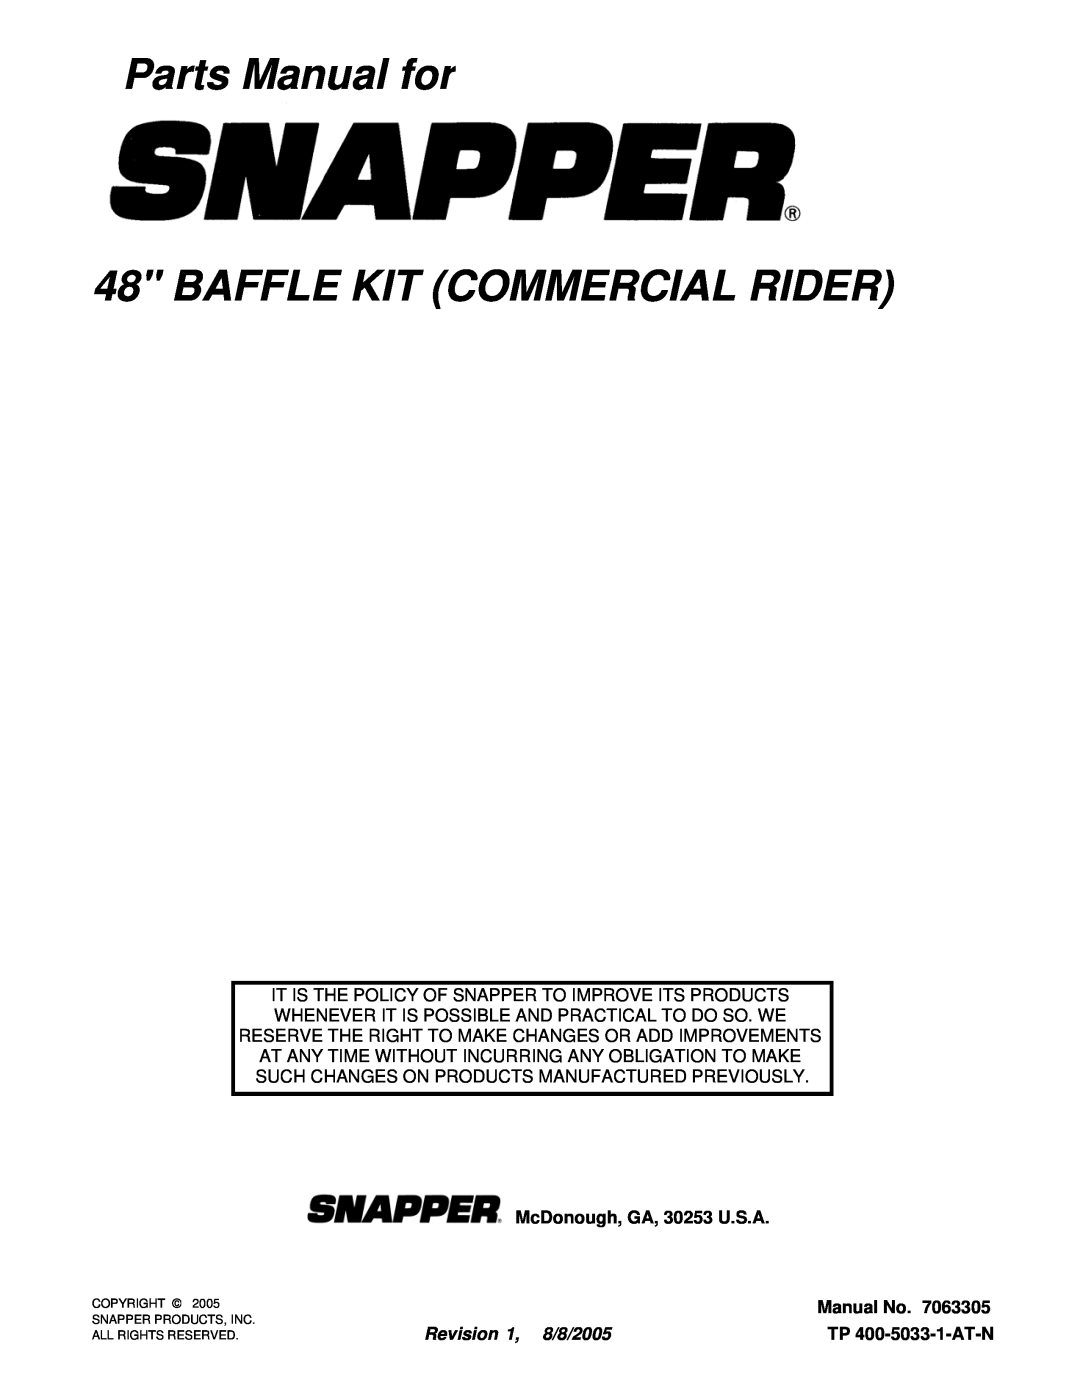 Snapper 7063305 Parts Manual for 48 BAFFLE KIT COMMERCIAL RIDER, McDonough, GA, 30253 U.S.A, Manual No, TP 400-5033-1-AT-N 